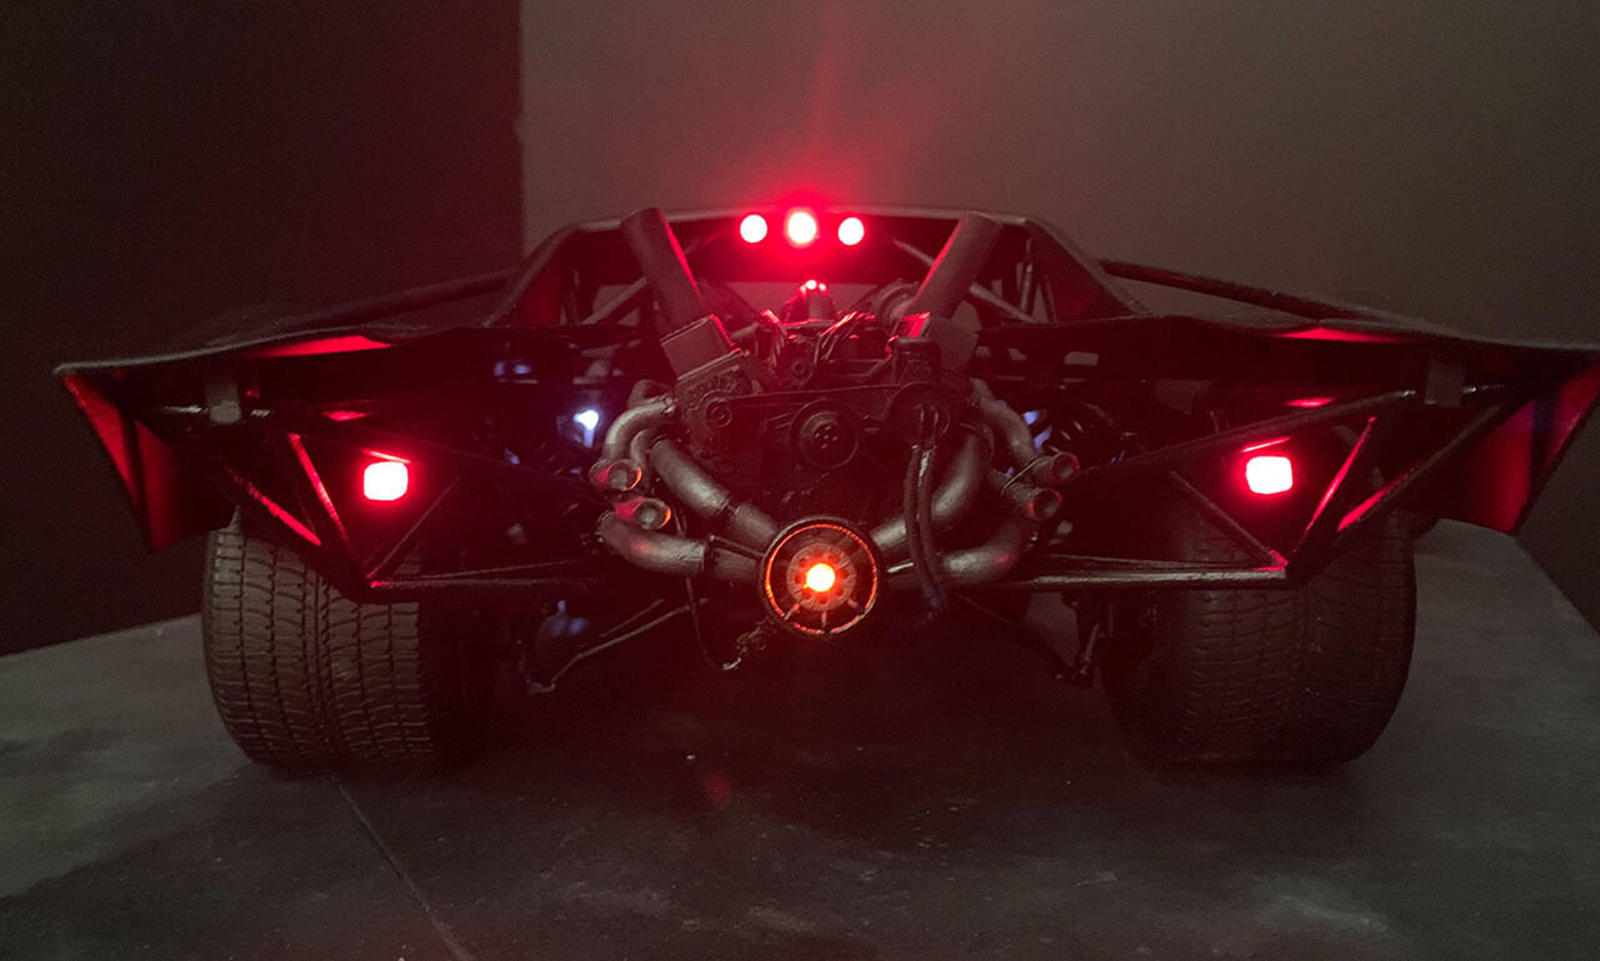 سيارة باتموبيل الجديدة تظهر في إعلان فيلم باتمان القادم 26